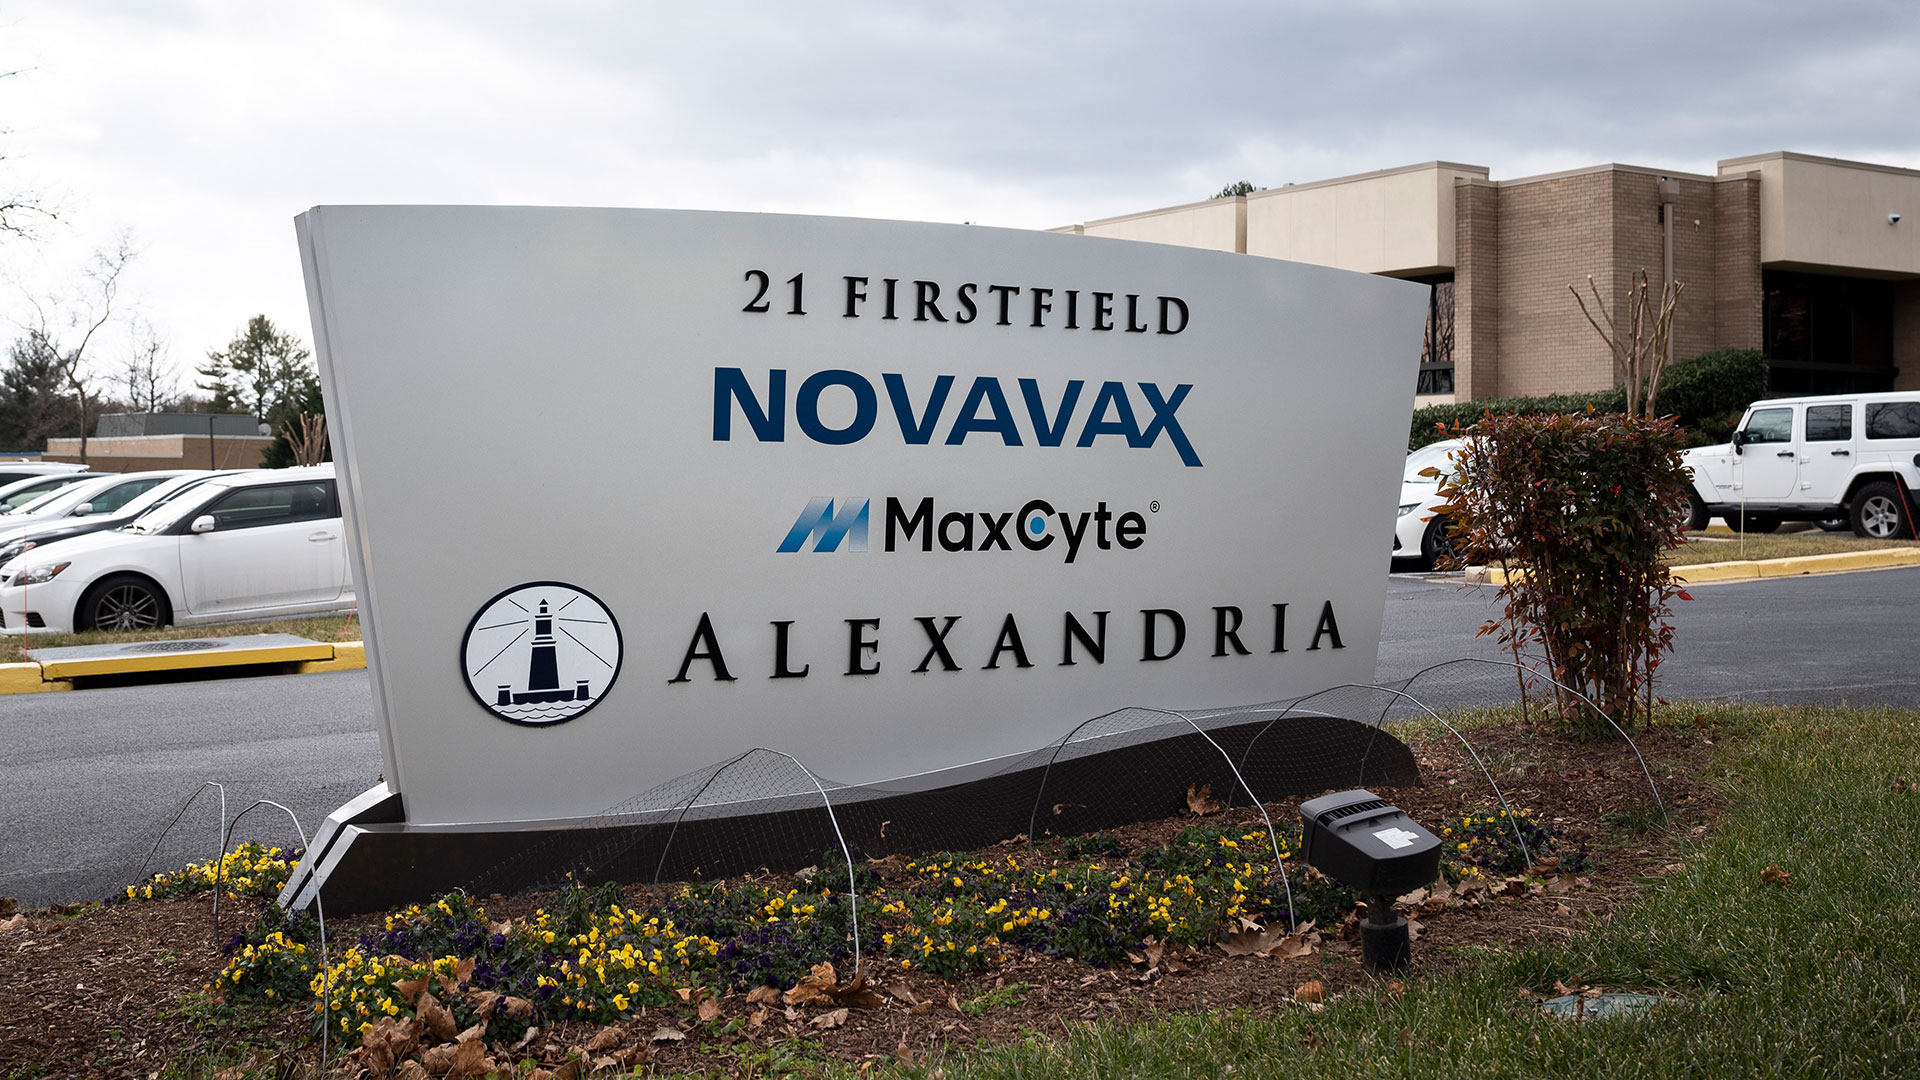 Wie groß sind die Chancen des neuen Corona-Impfstoffs von Novavax?